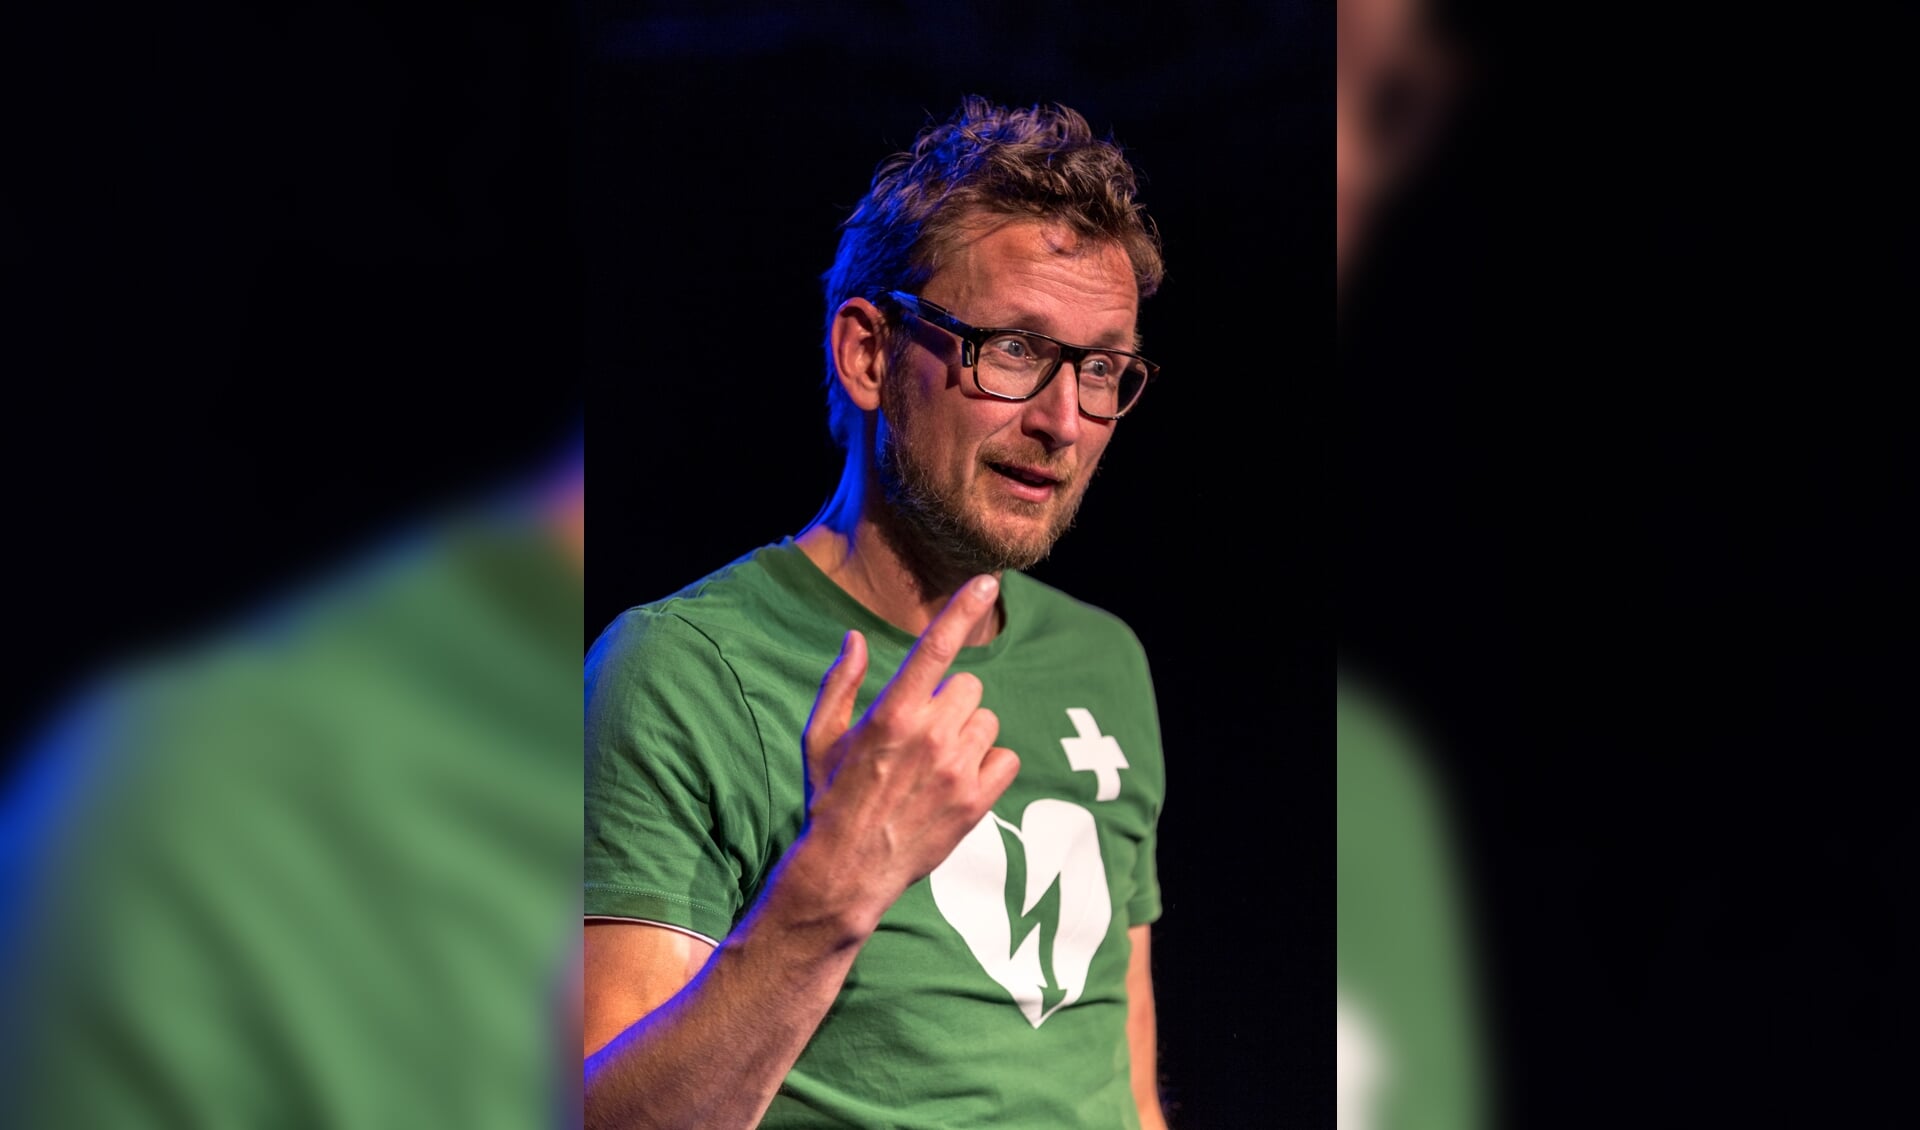 Pieter Jouke brengt zijn show 'Laars Lappen' naar Nijverdal